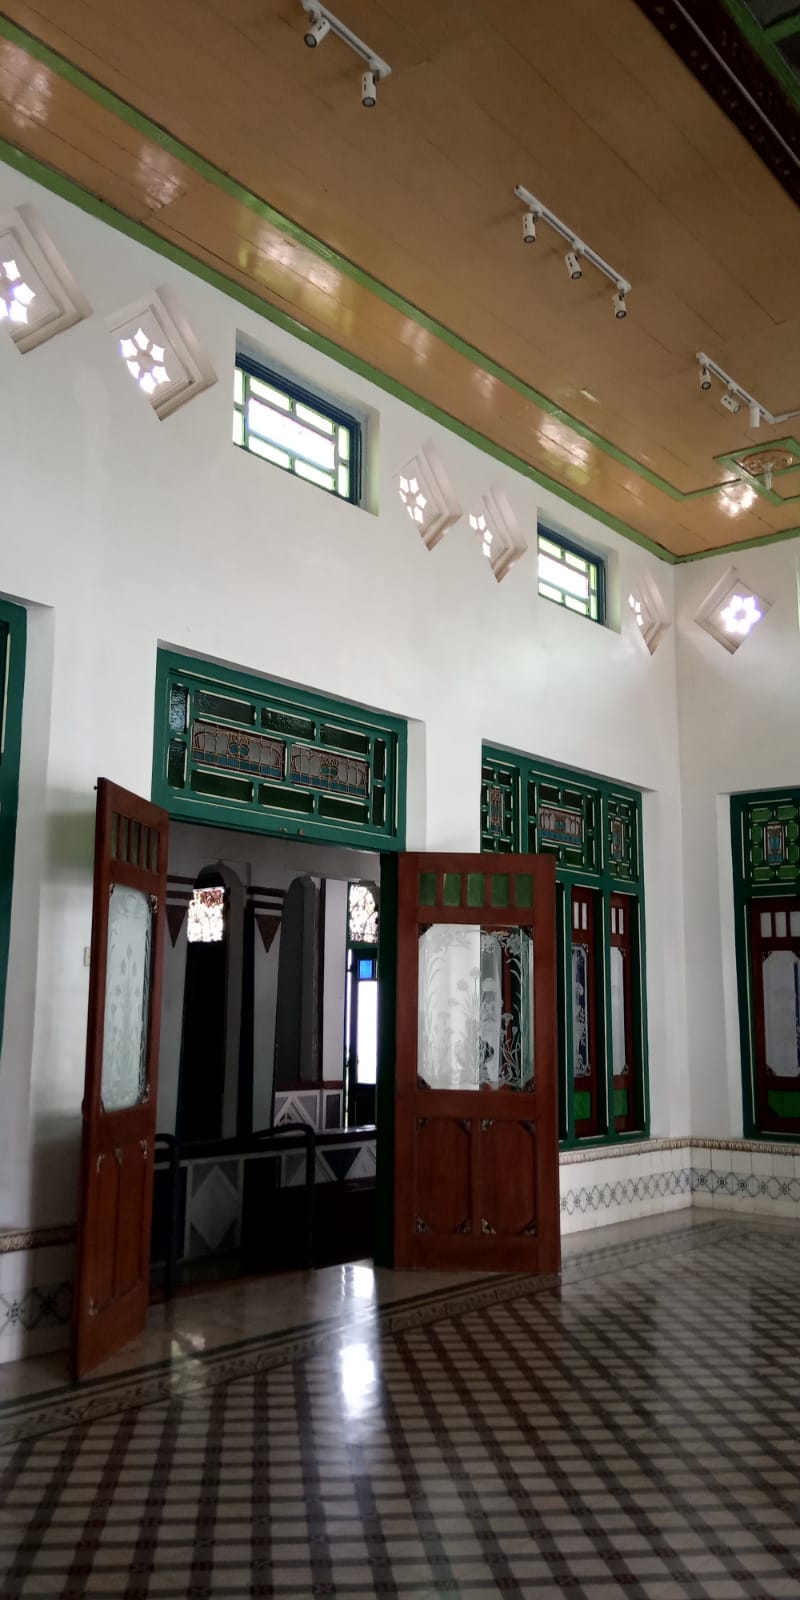 Napak tilas Kotagede Ibu Kota Mataram Islam di Intro Living Museum